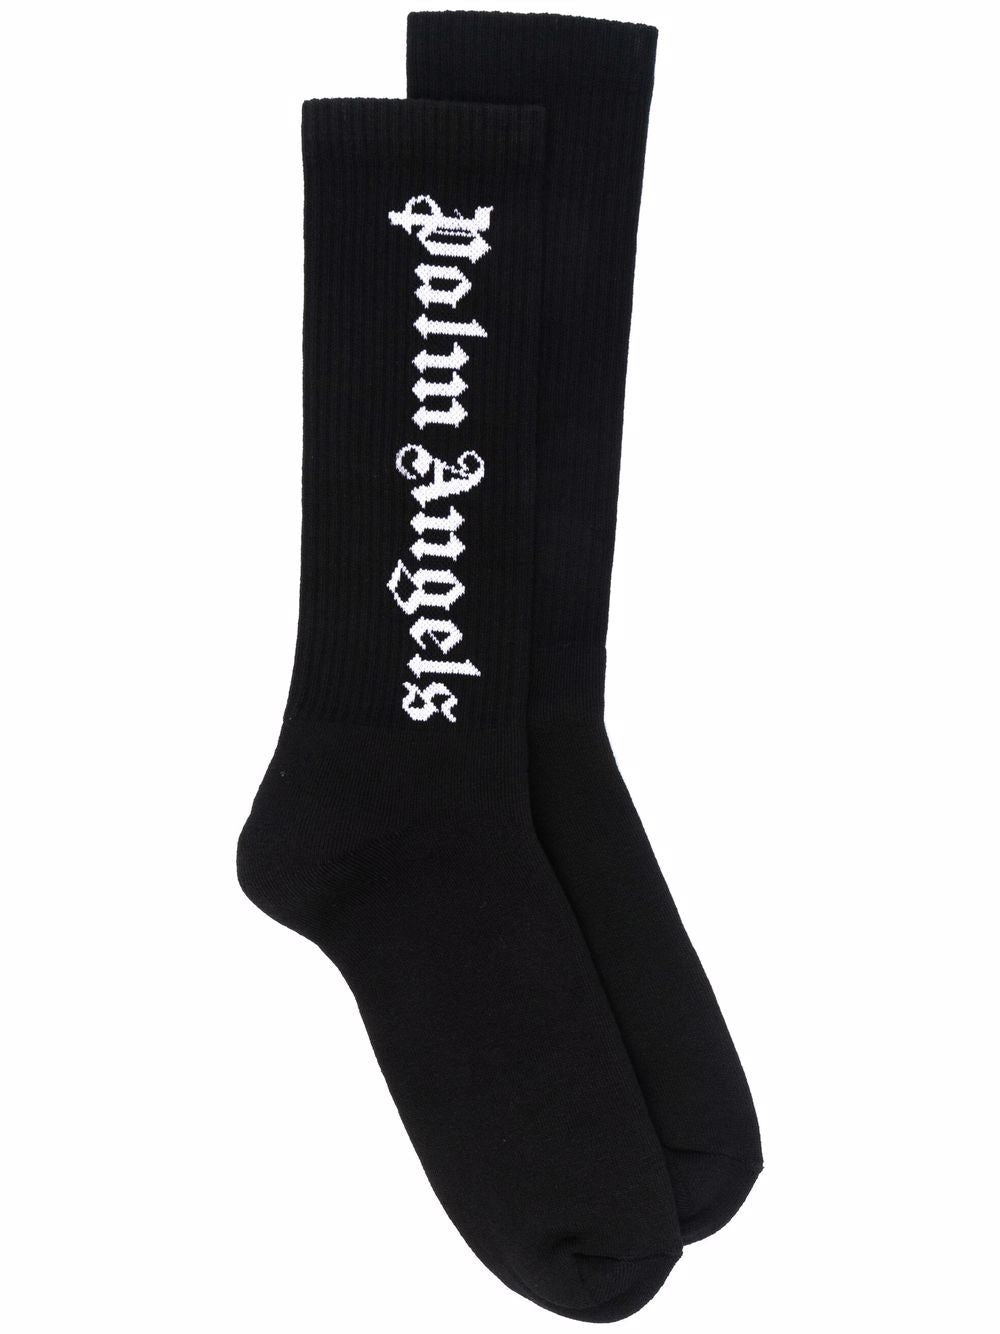 Black/White intarsia logo socks